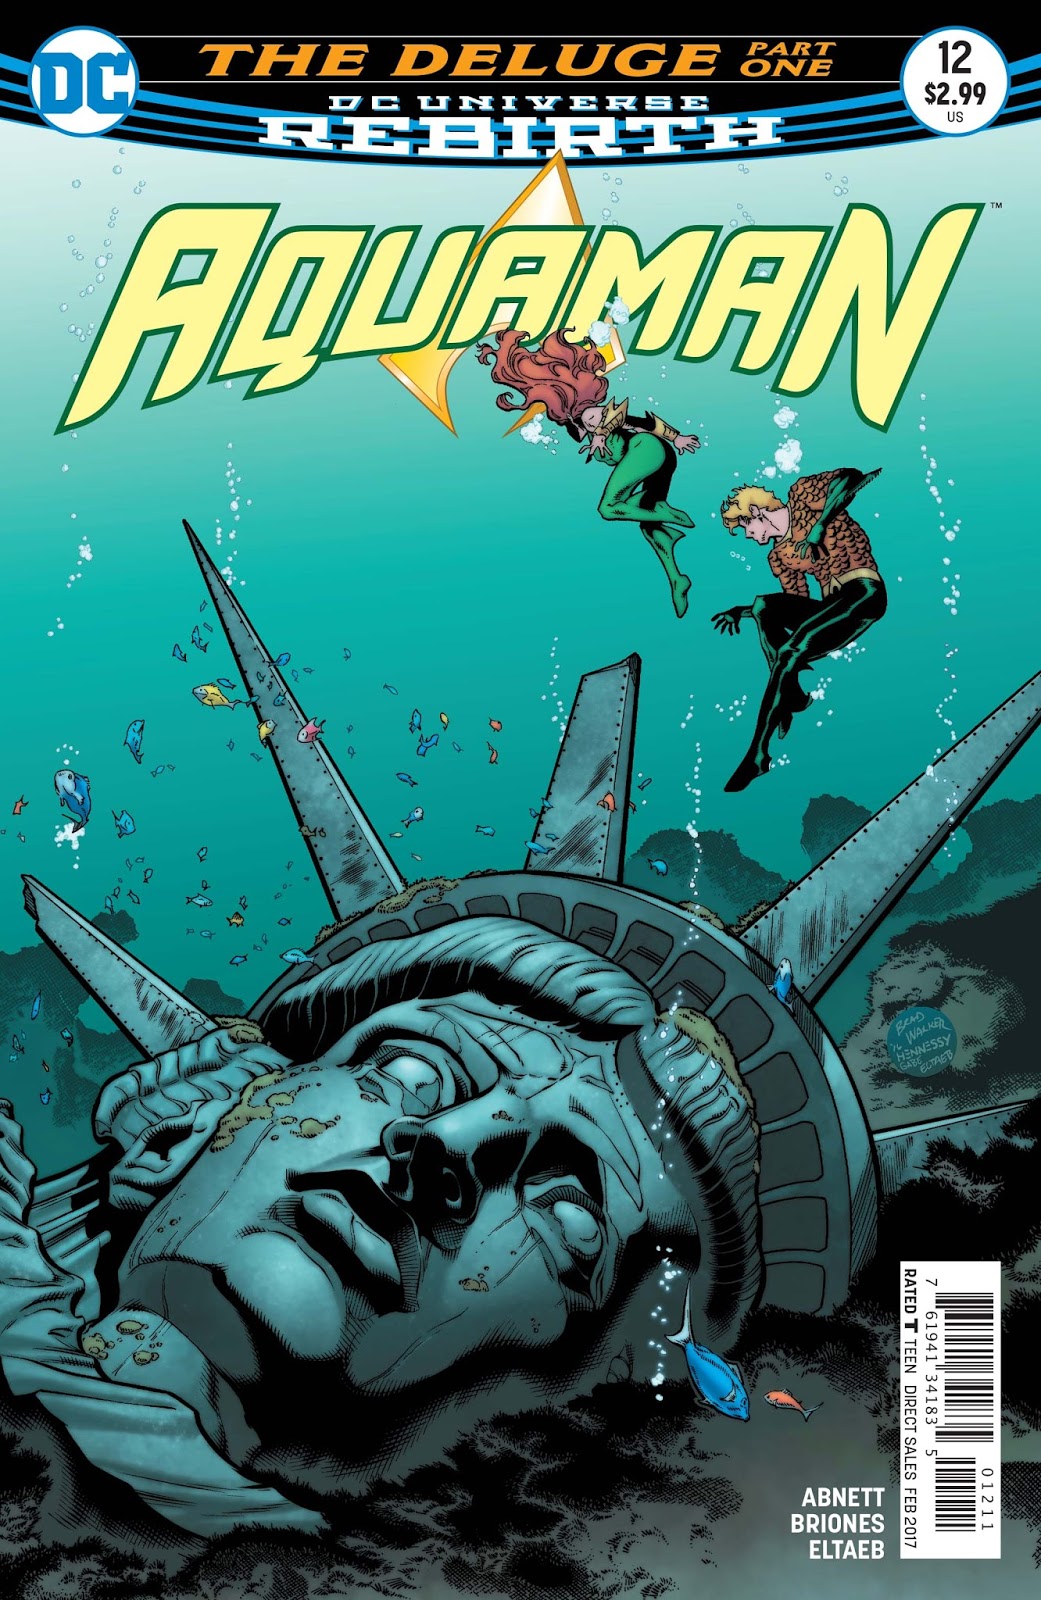 DC COMICS/2016 AQUAMAN #12 BRAD WALKER REBIRTH COVER & ART 